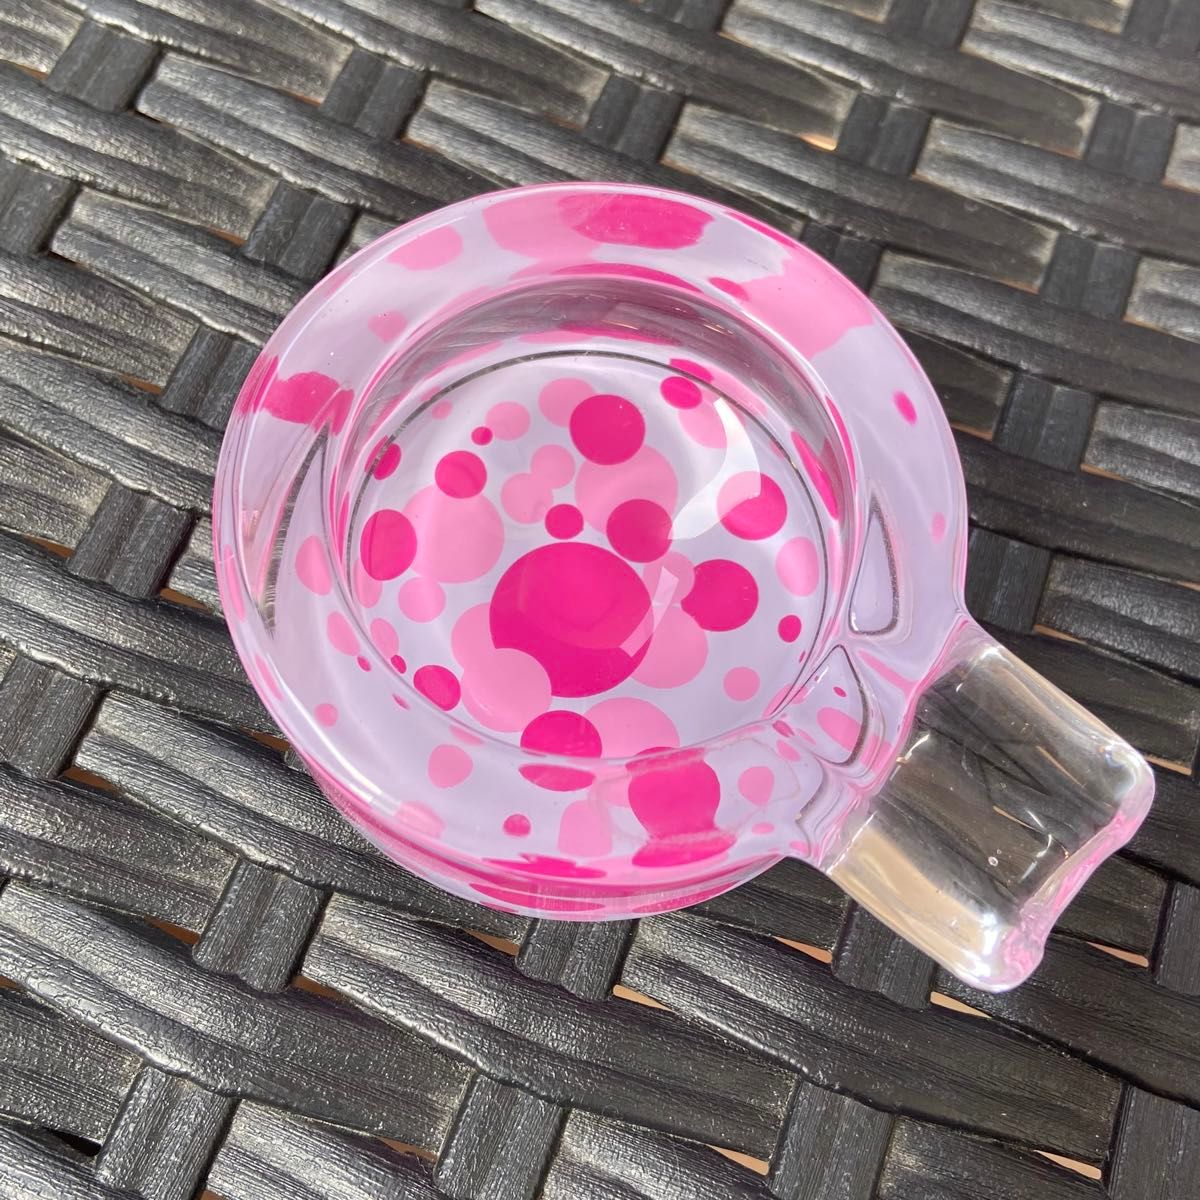 【お値下げ】レトロ調カラーガラス灰皿 3個セット ピンク系 ガラス ヴィンテージガラス 昭和レトロ マーブル 小物入れ